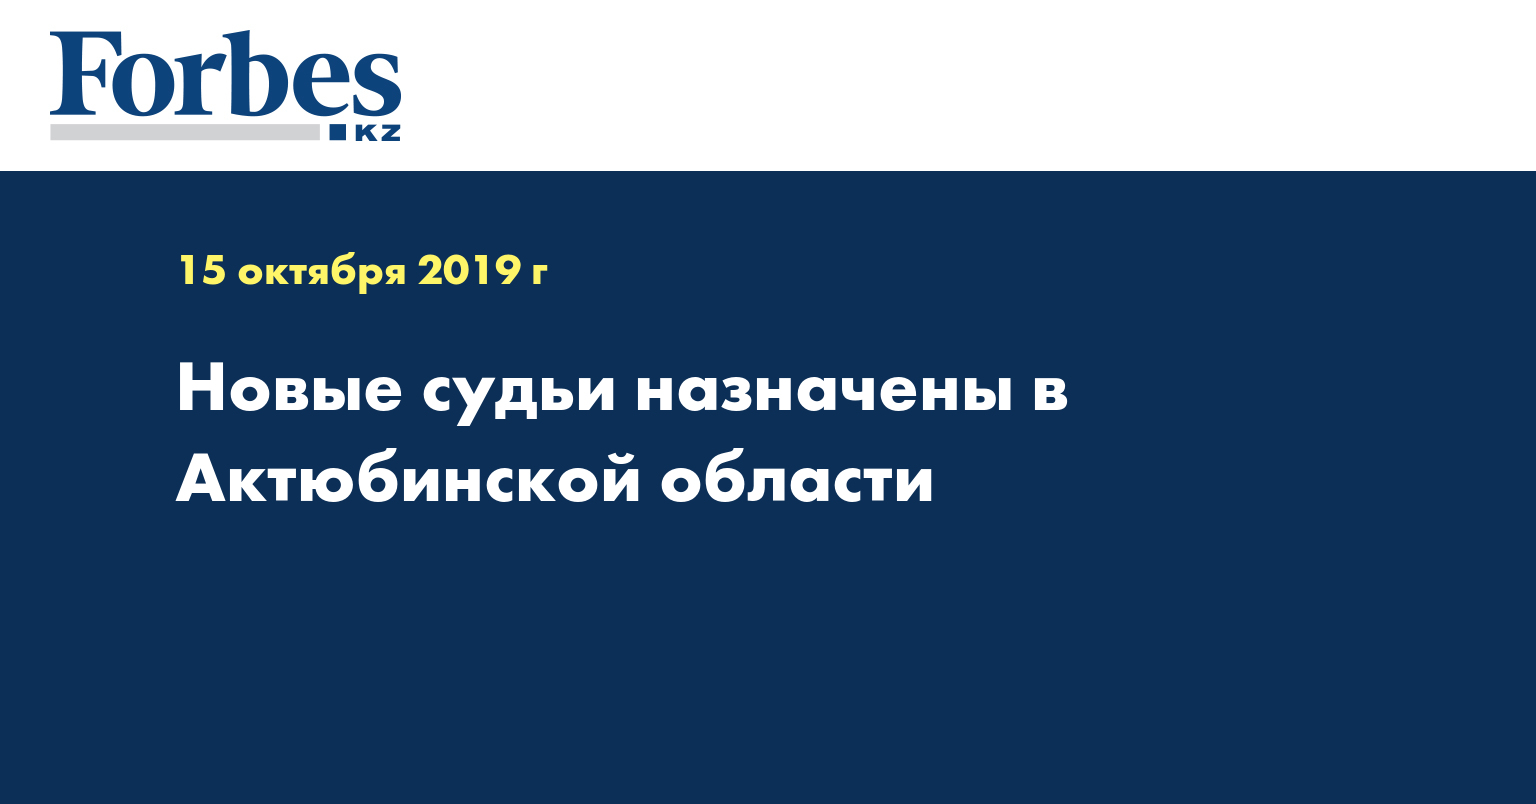 Новые судьи назначены в Актюбинской области